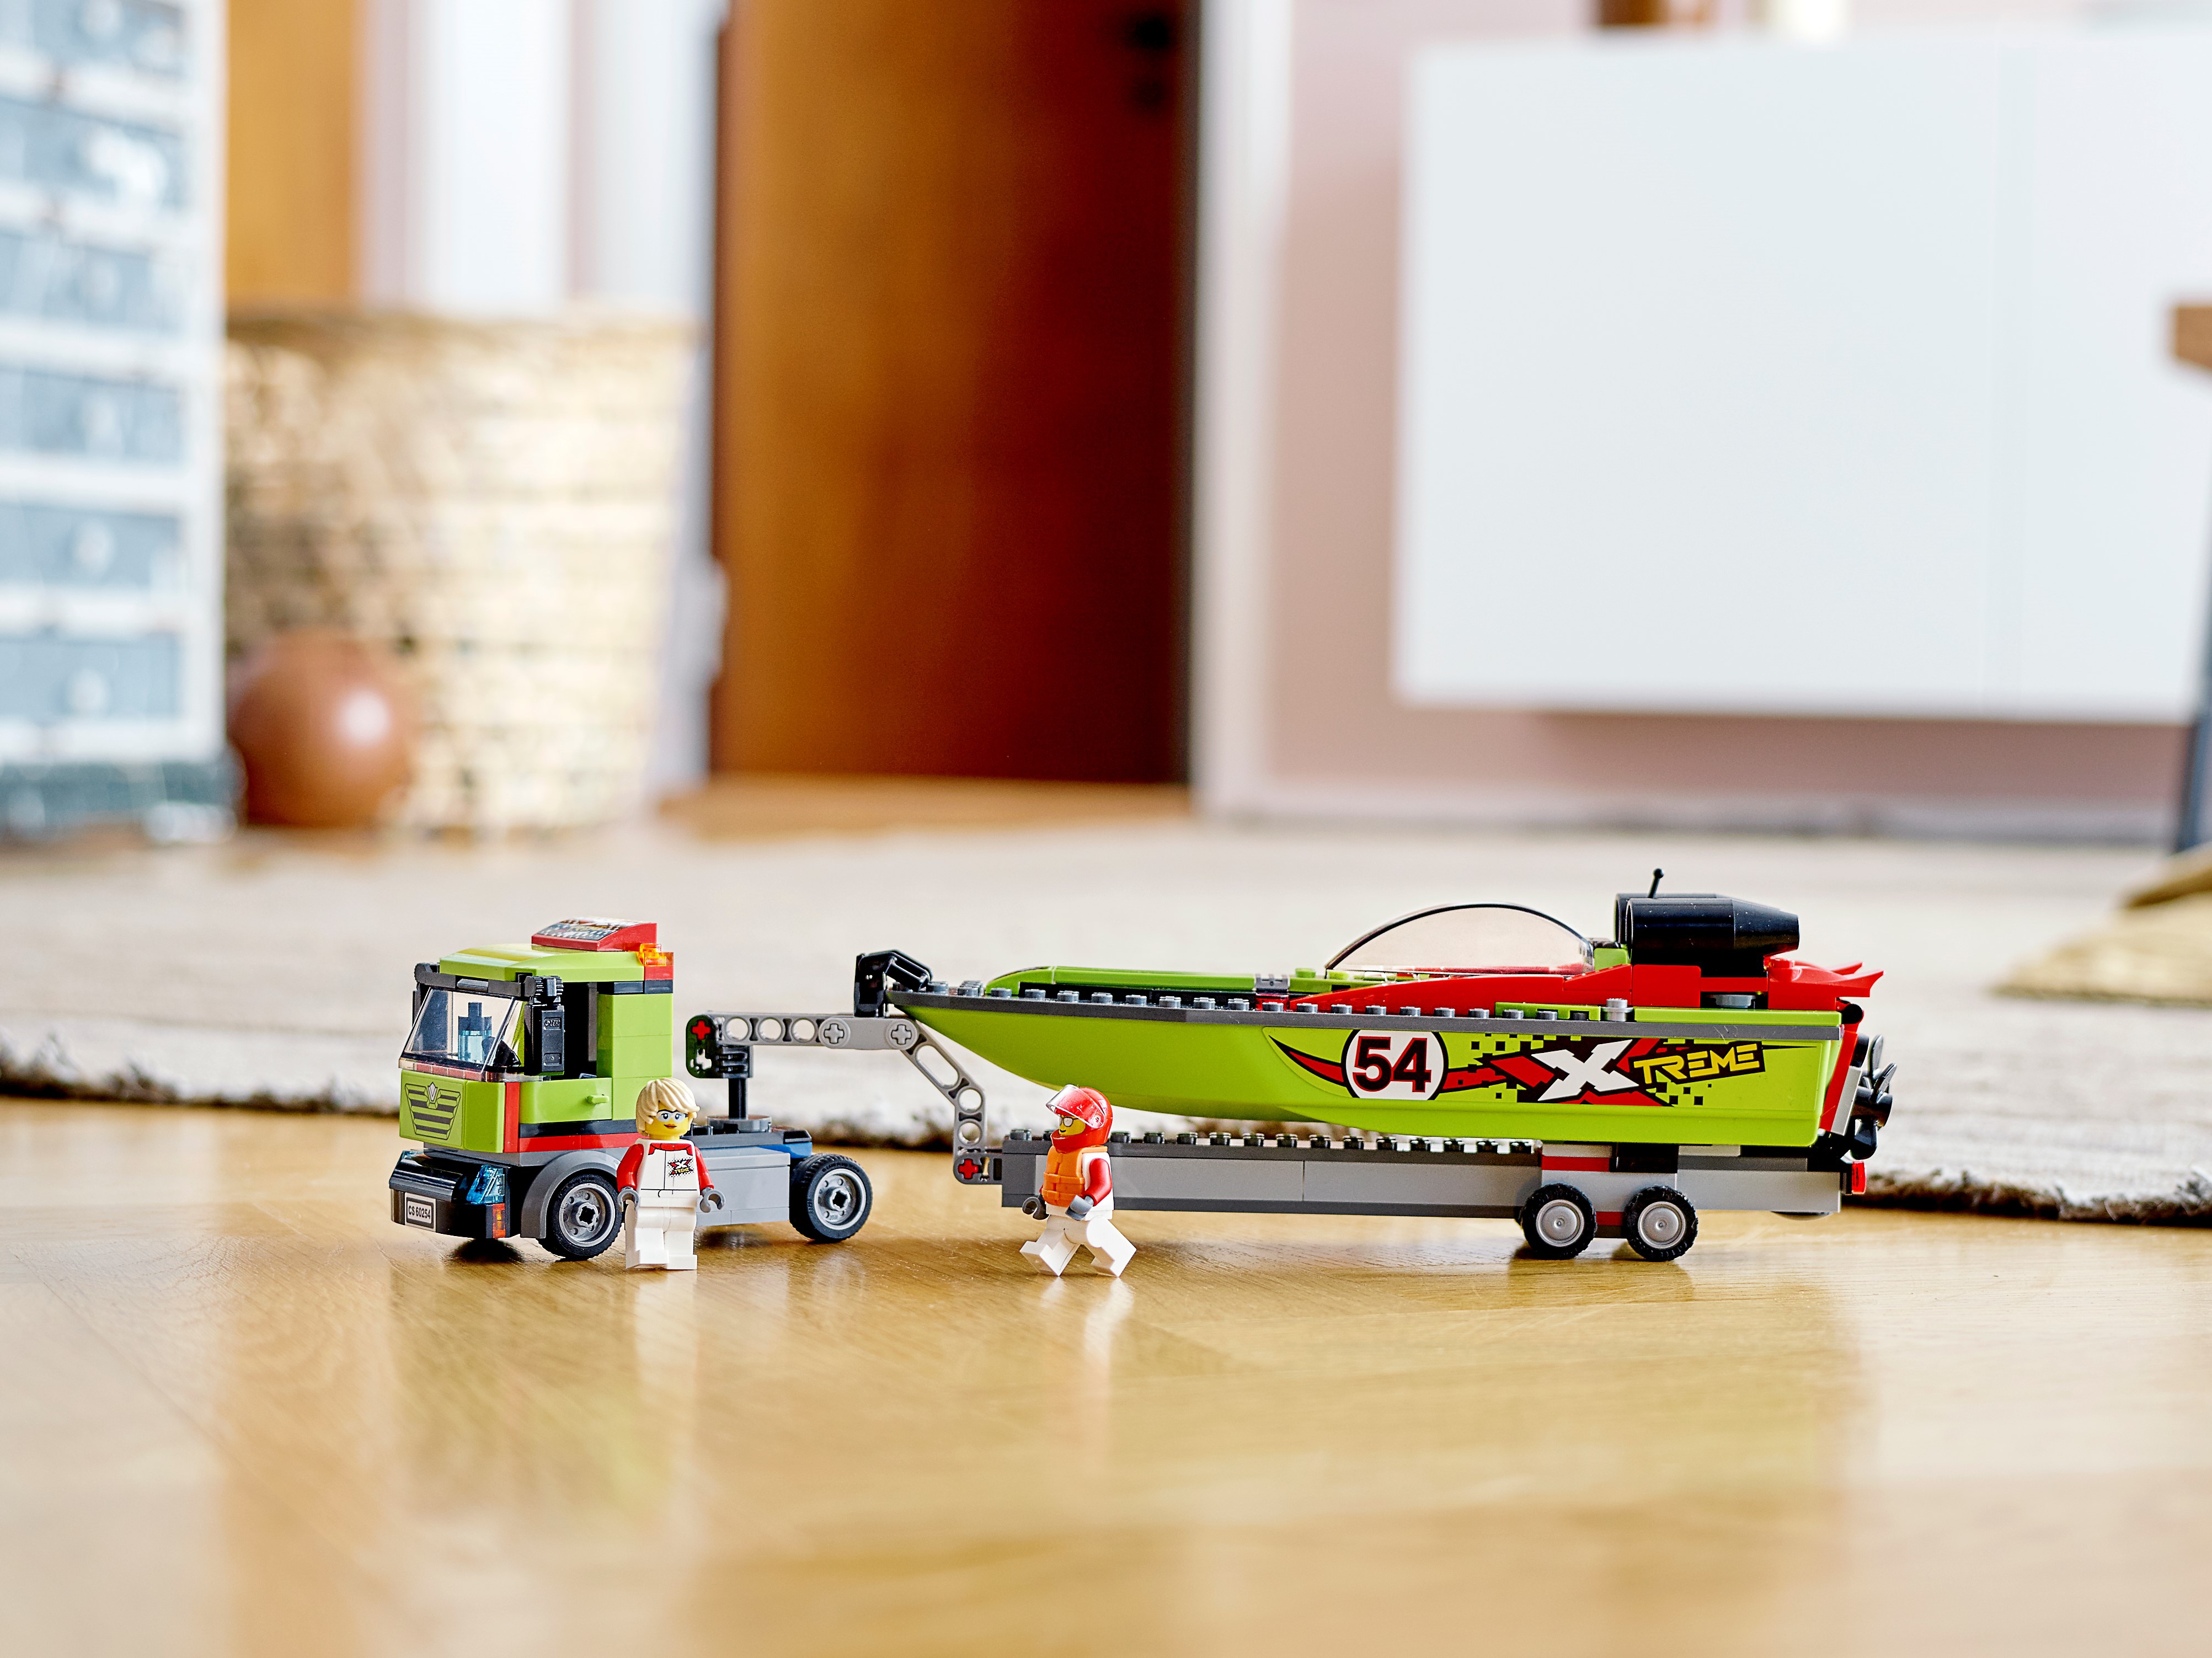 uudgrundelig Gå rundt Arbejdsløs Race Boat Transporter 60254 | City | Buy online at the Official LEGO® Shop  US